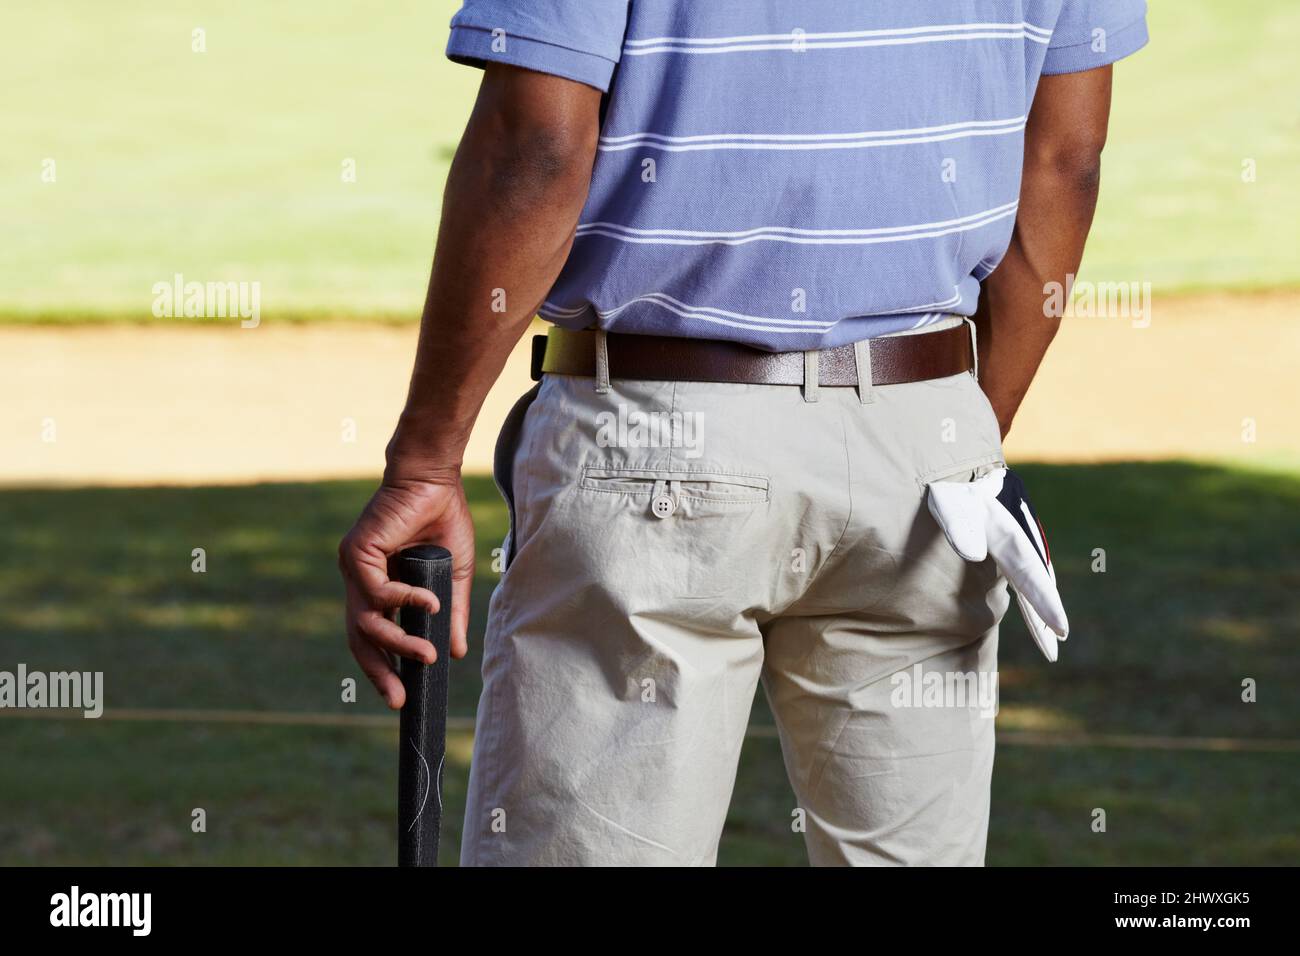 Warten auf seinen Abschlag. Rückansicht eines ausgeschnittenen Schusses eines Golfspielers im Mittelteil mit einem Handschuh, der aus seiner Gesäßtasche hing. Stockfoto